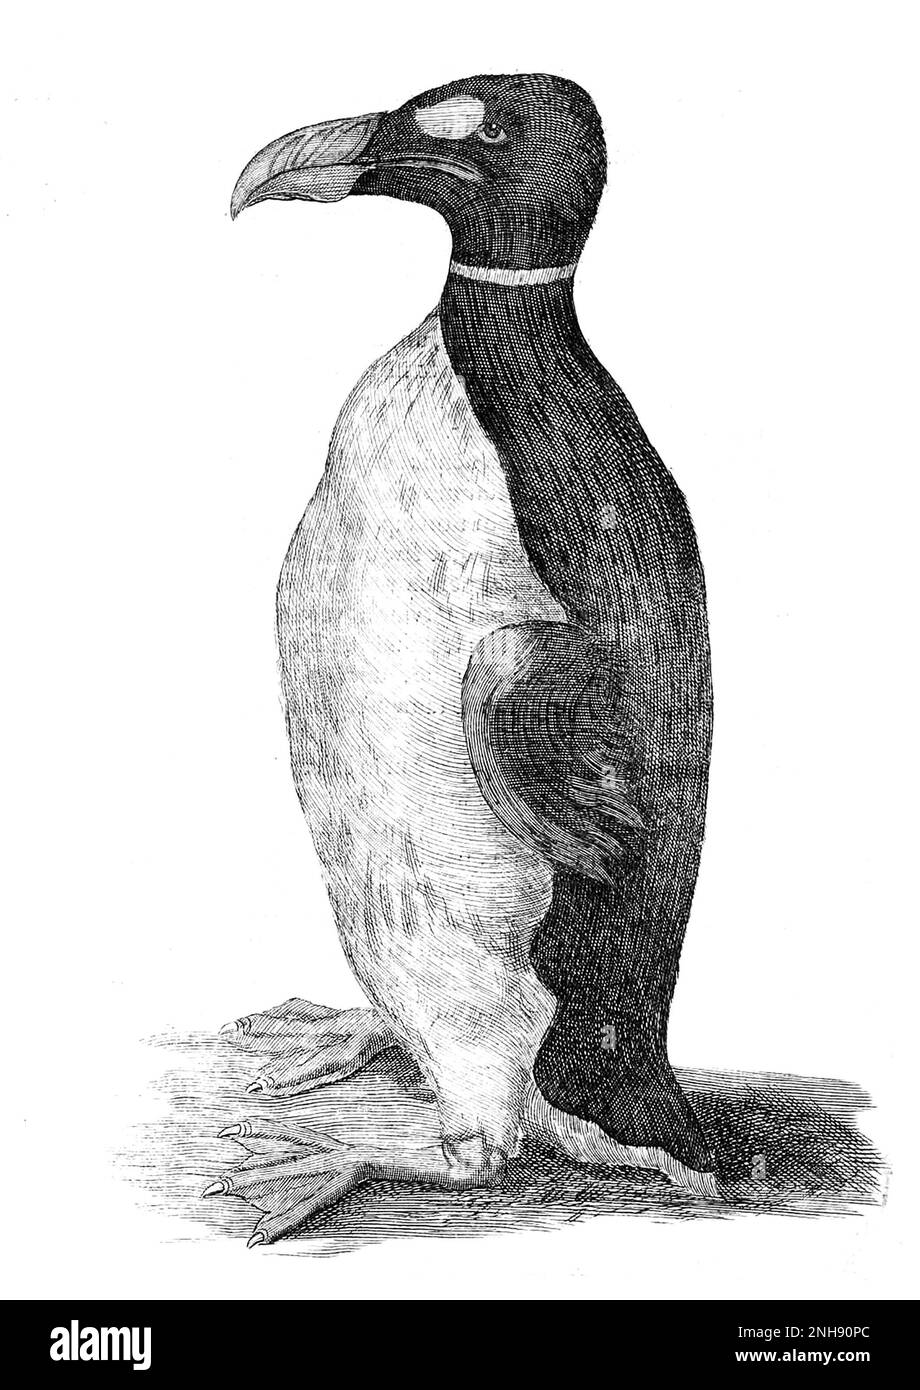 Solo nota illustrazione di un grande Auk tratto dalla vita. Questo era l'animale domestico del medico danese e dello storico naturale Olaus Wormius a.k.a. Worm OLE (1588-1654). Lo ricevette dalle Isole Faroe e fu descritto nel suo libro Museum Wormianum, 1655. Il grande auk (Pinguinus impennis) è una specie di alcide senza luce che si estinse a metà del 19th° secolo. Era l'unica specie moderna del genere Pinguinus. Foto Stock